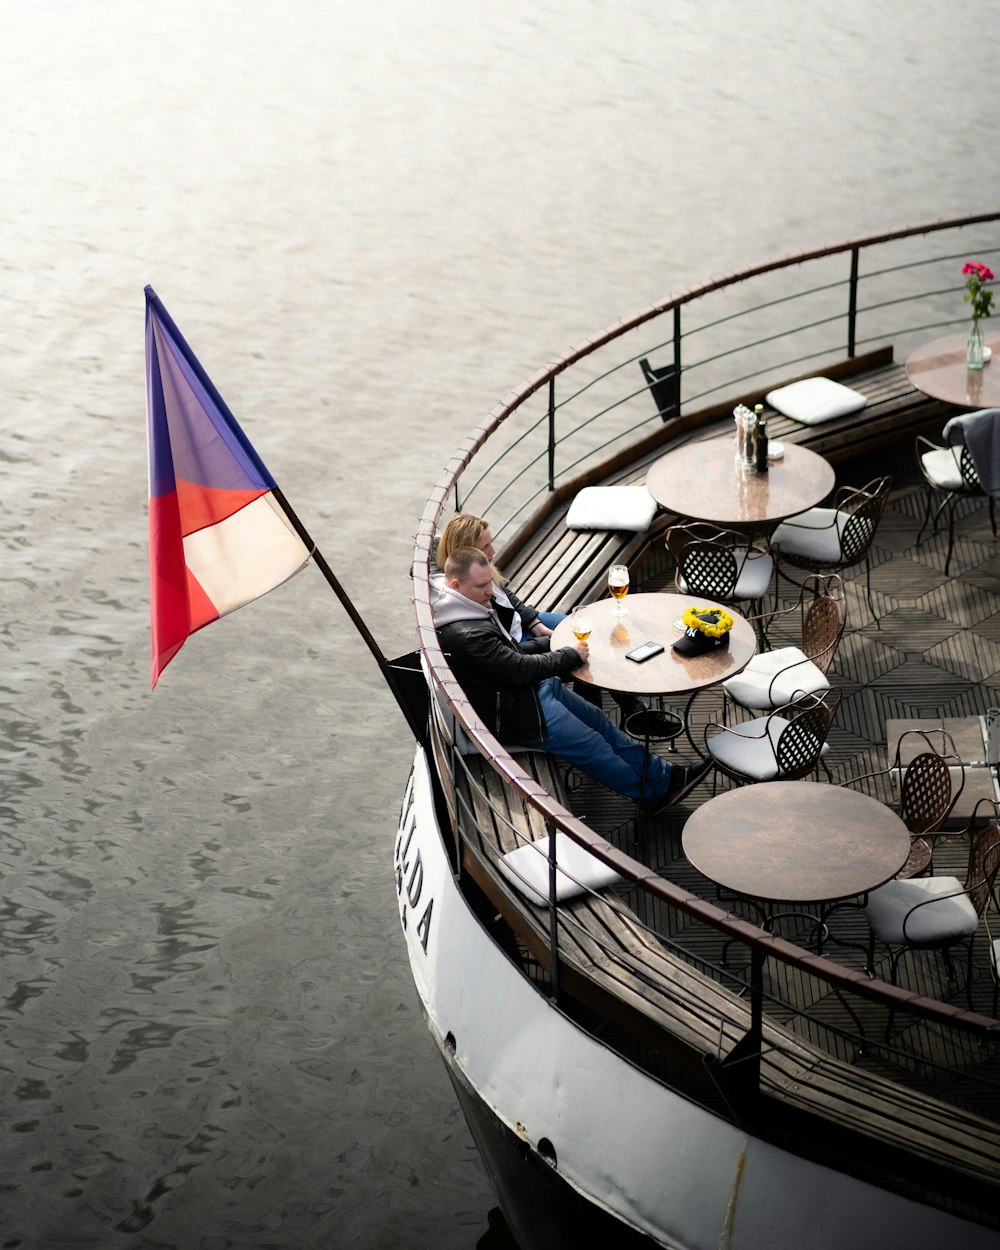 Una persona sentada en un barco con una bandera